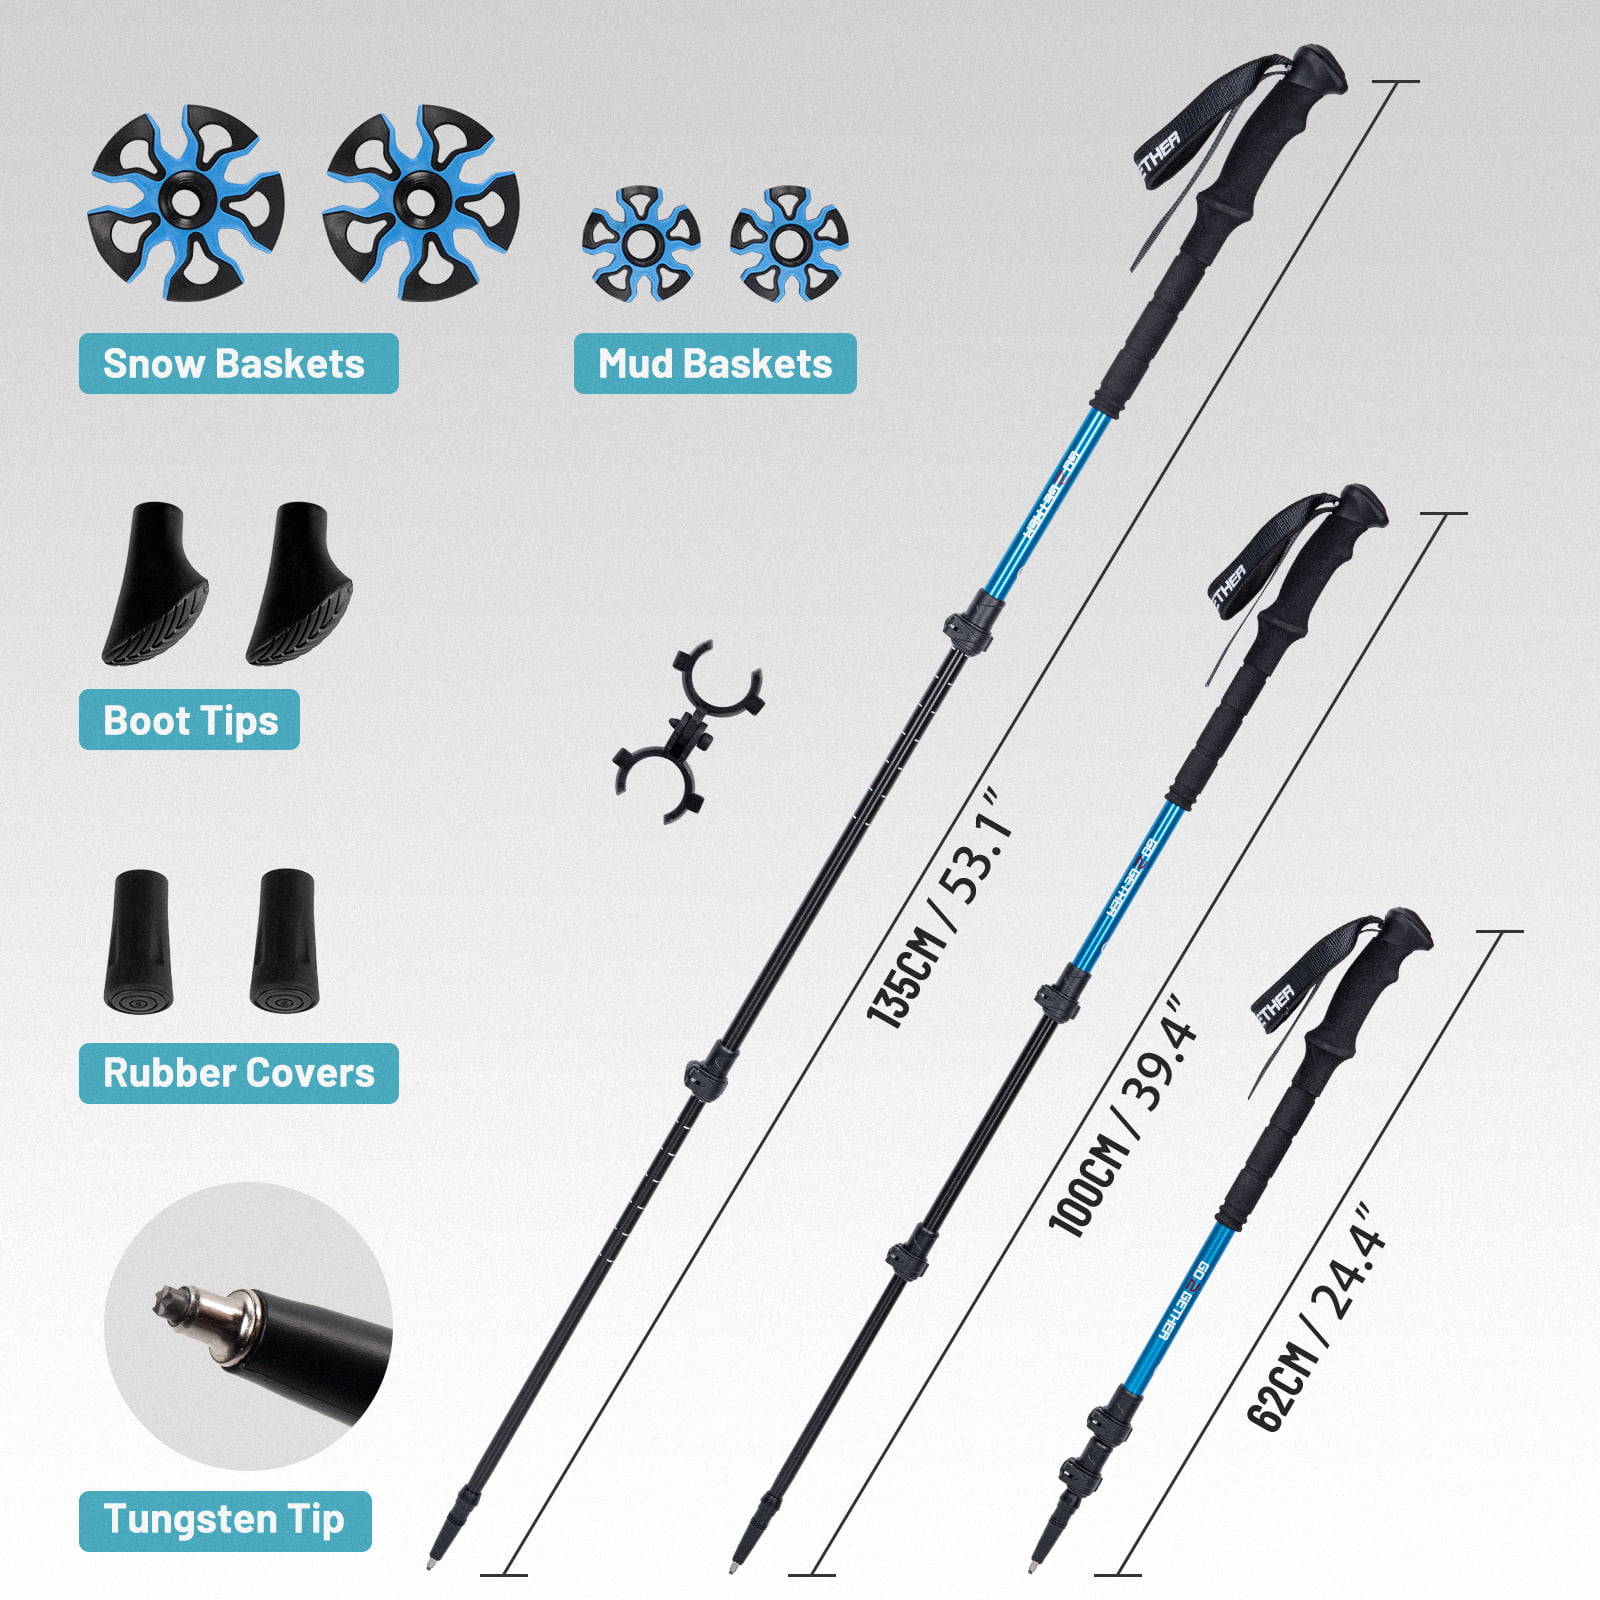 超目玉 G2 25 Inch Mountain Terrain Snowshoes with Trekking Poles Set, Improved  Extended Crampon, EVA Foam Padded, Flexible Pivot Bar, Tote Bag, Bl 並行輸入品 